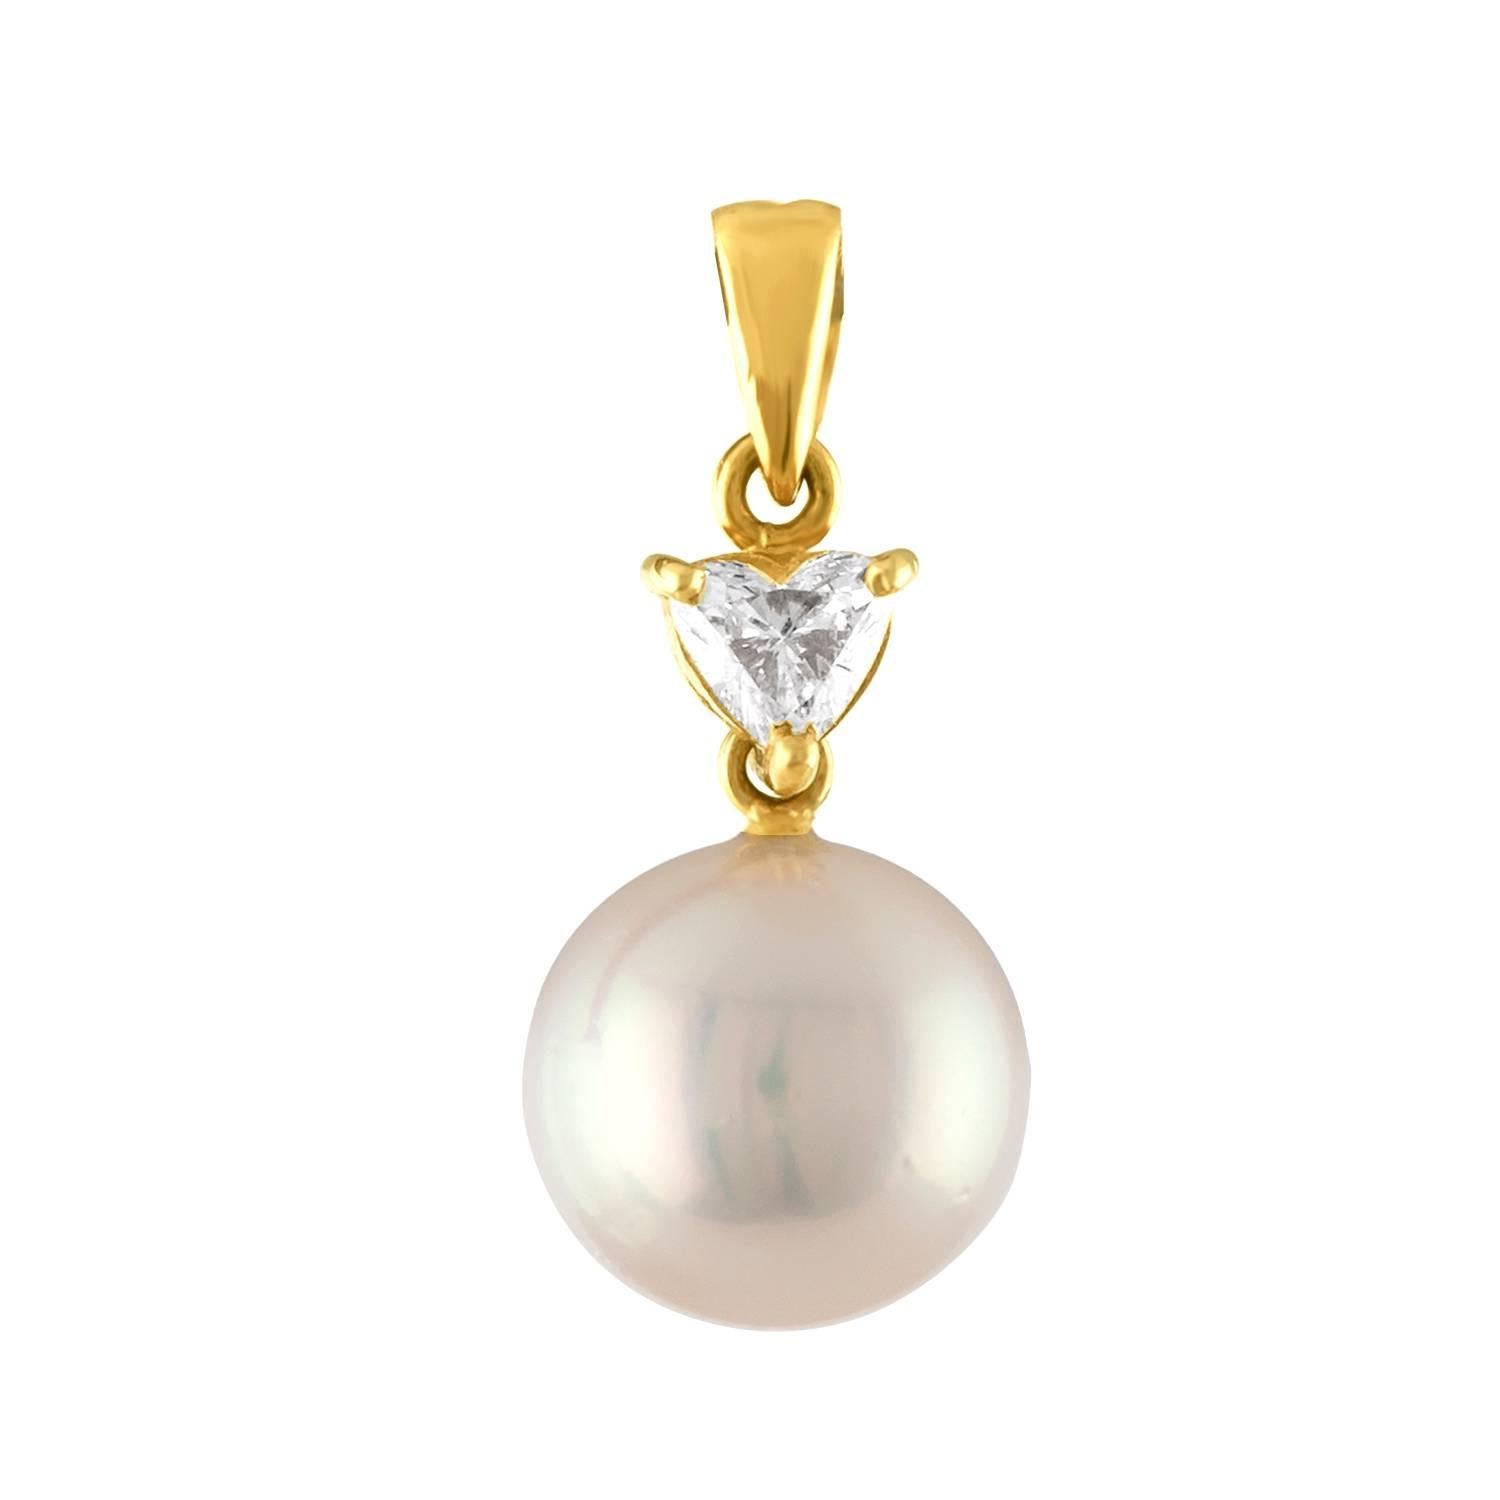 Collier de perles en or très délicat
Le collier est en or jaune 18K
Le diamant est en forme de cœur 0.30 Carats E VS
La perle de culture d'eau douce mesure 9,6 mm
La chaîne est en or jaune 18K et mesure 16 pouces de long
La chaîne et le pendentif